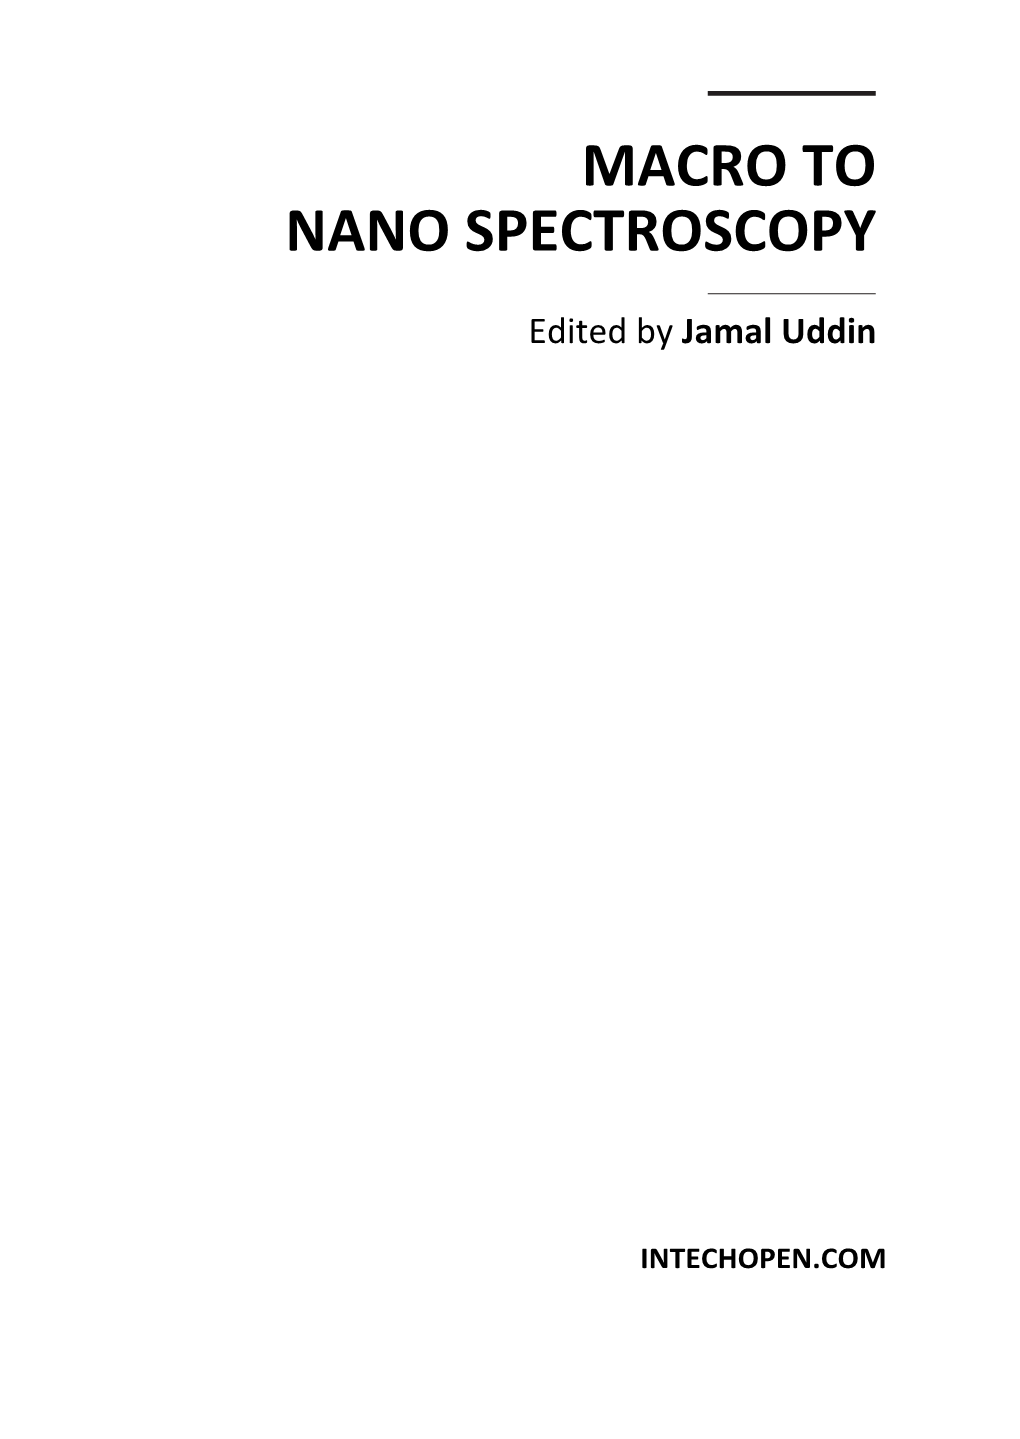 Macro to Nano Spectroscopy